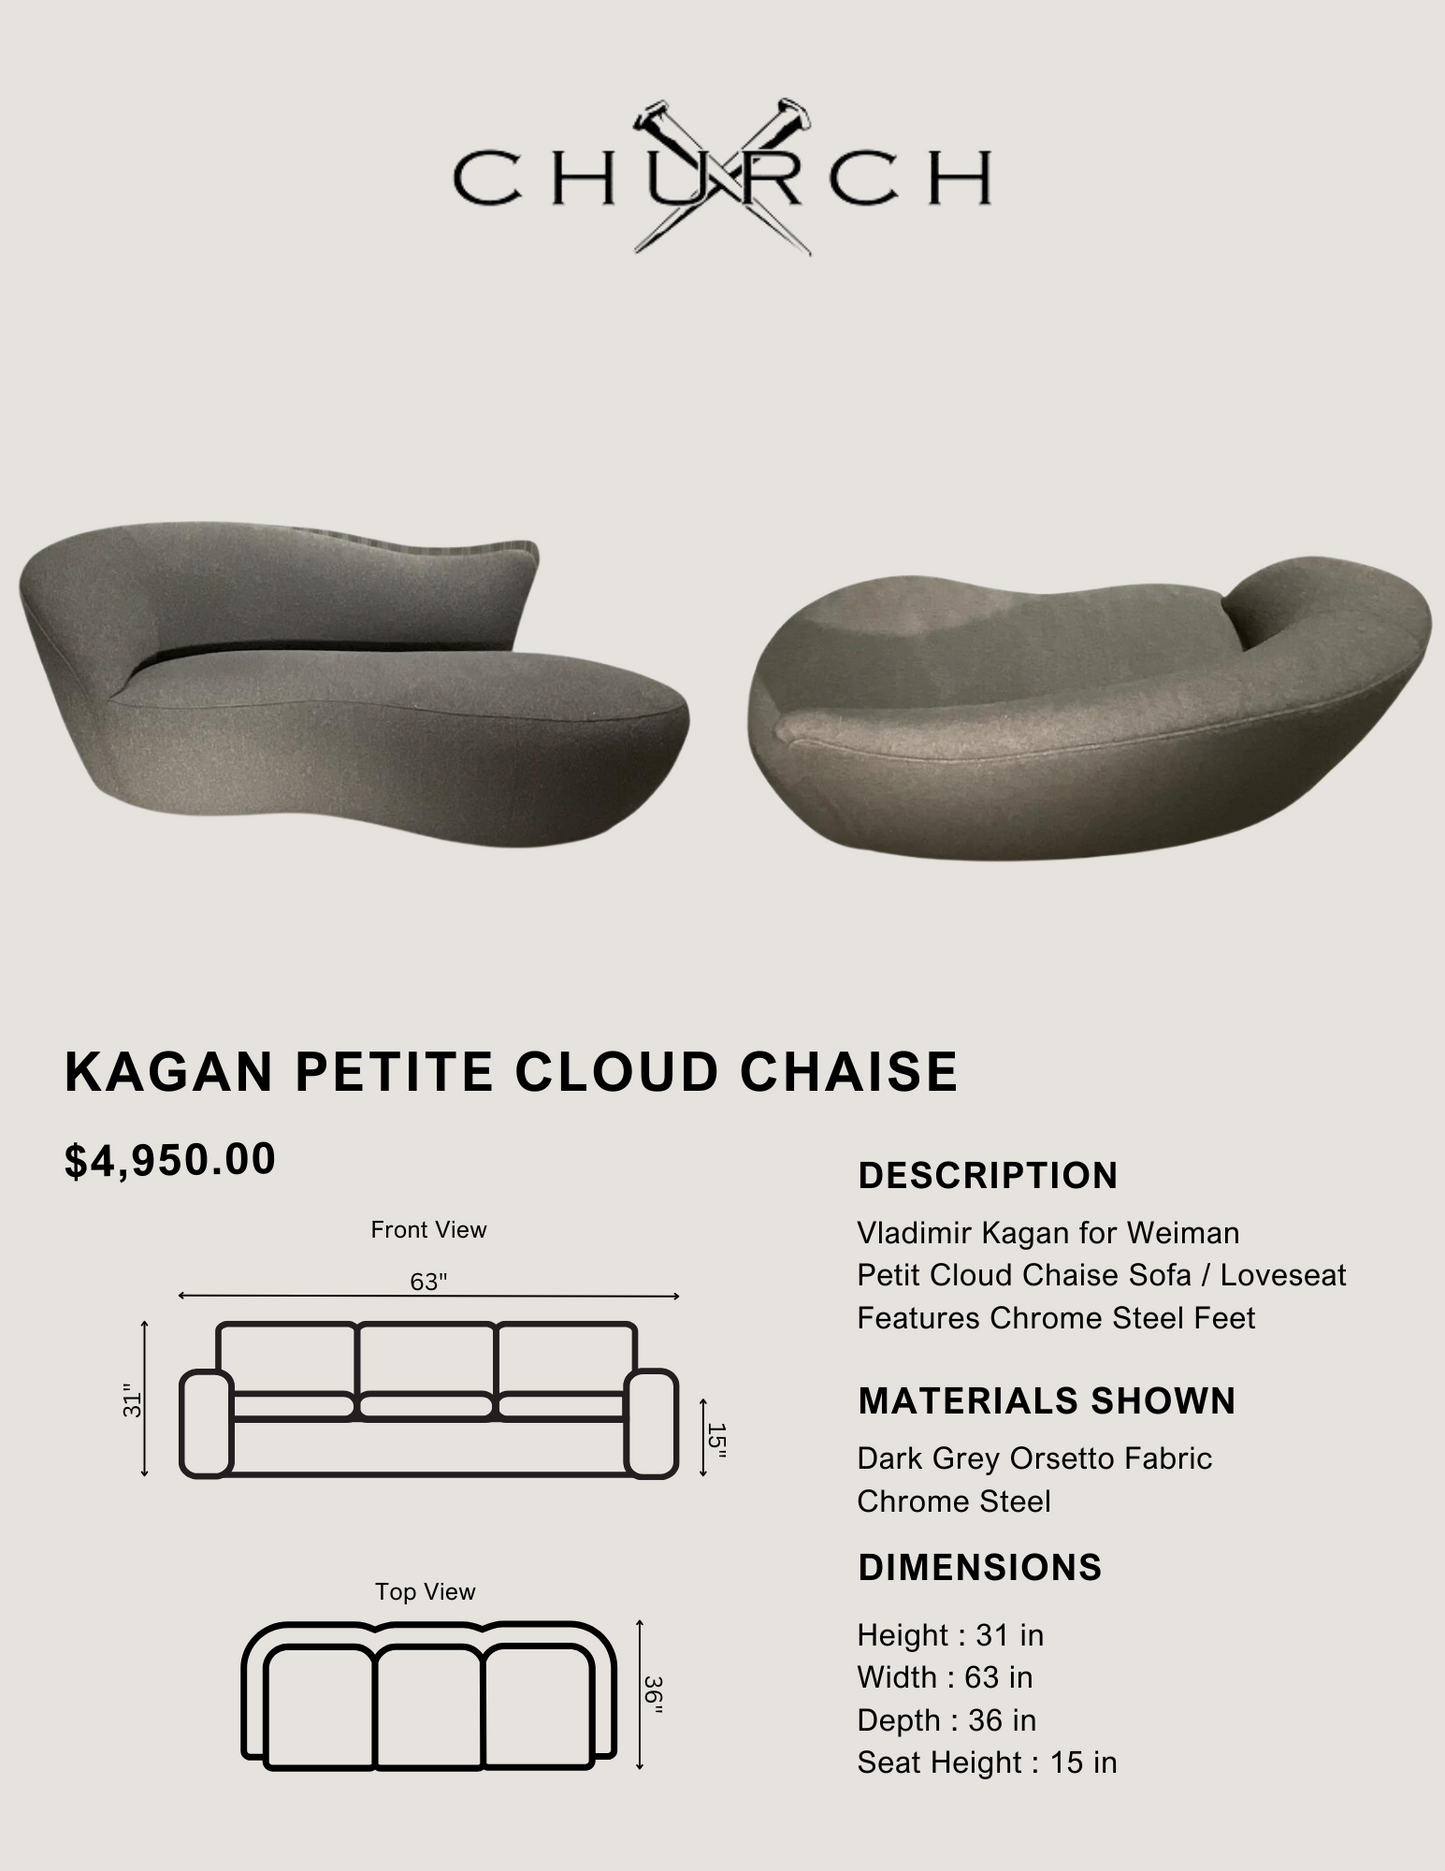 Kagan Petite Cloud Chaise